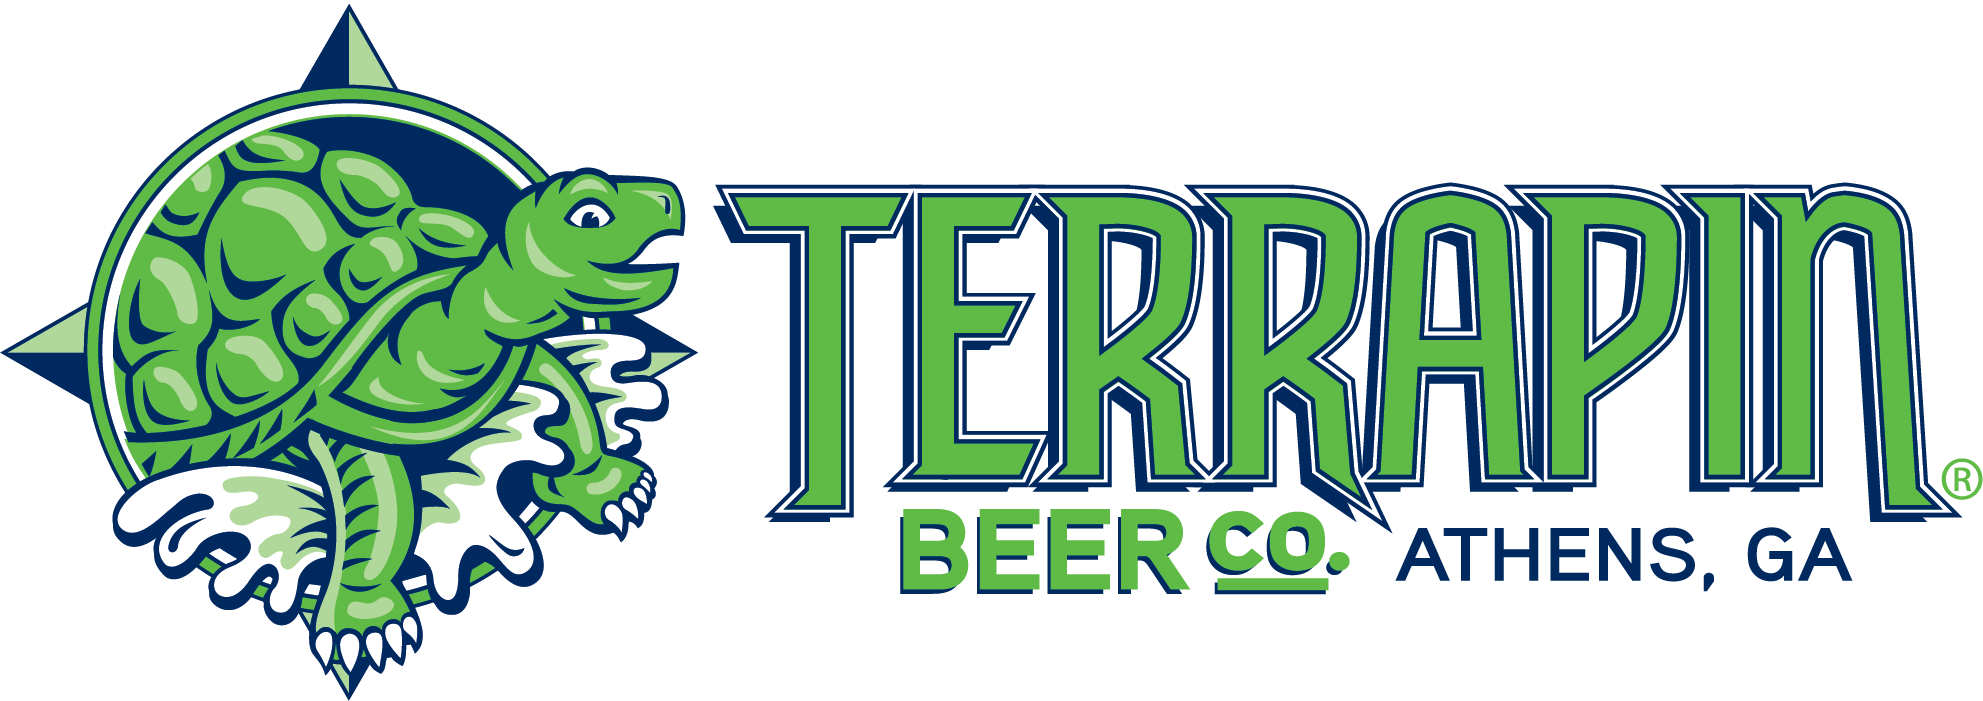 Terrapin horiz logo Vector_CMYK.png